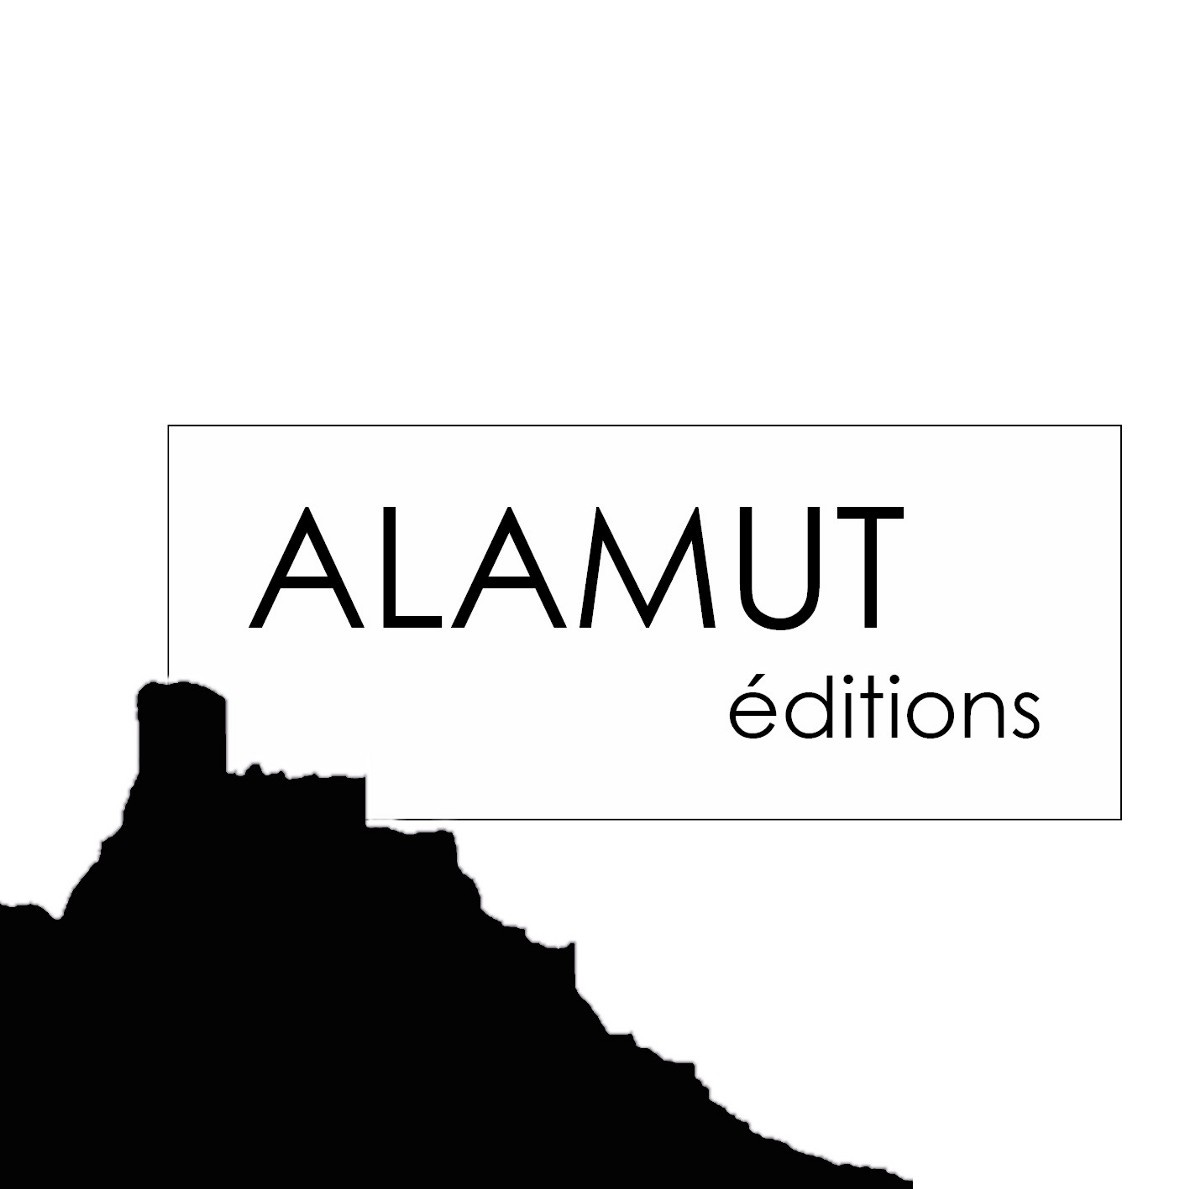 Alamut éditions. Un projet éditiorial différent | by Alamut éditions | Aug,  2021 | Medium